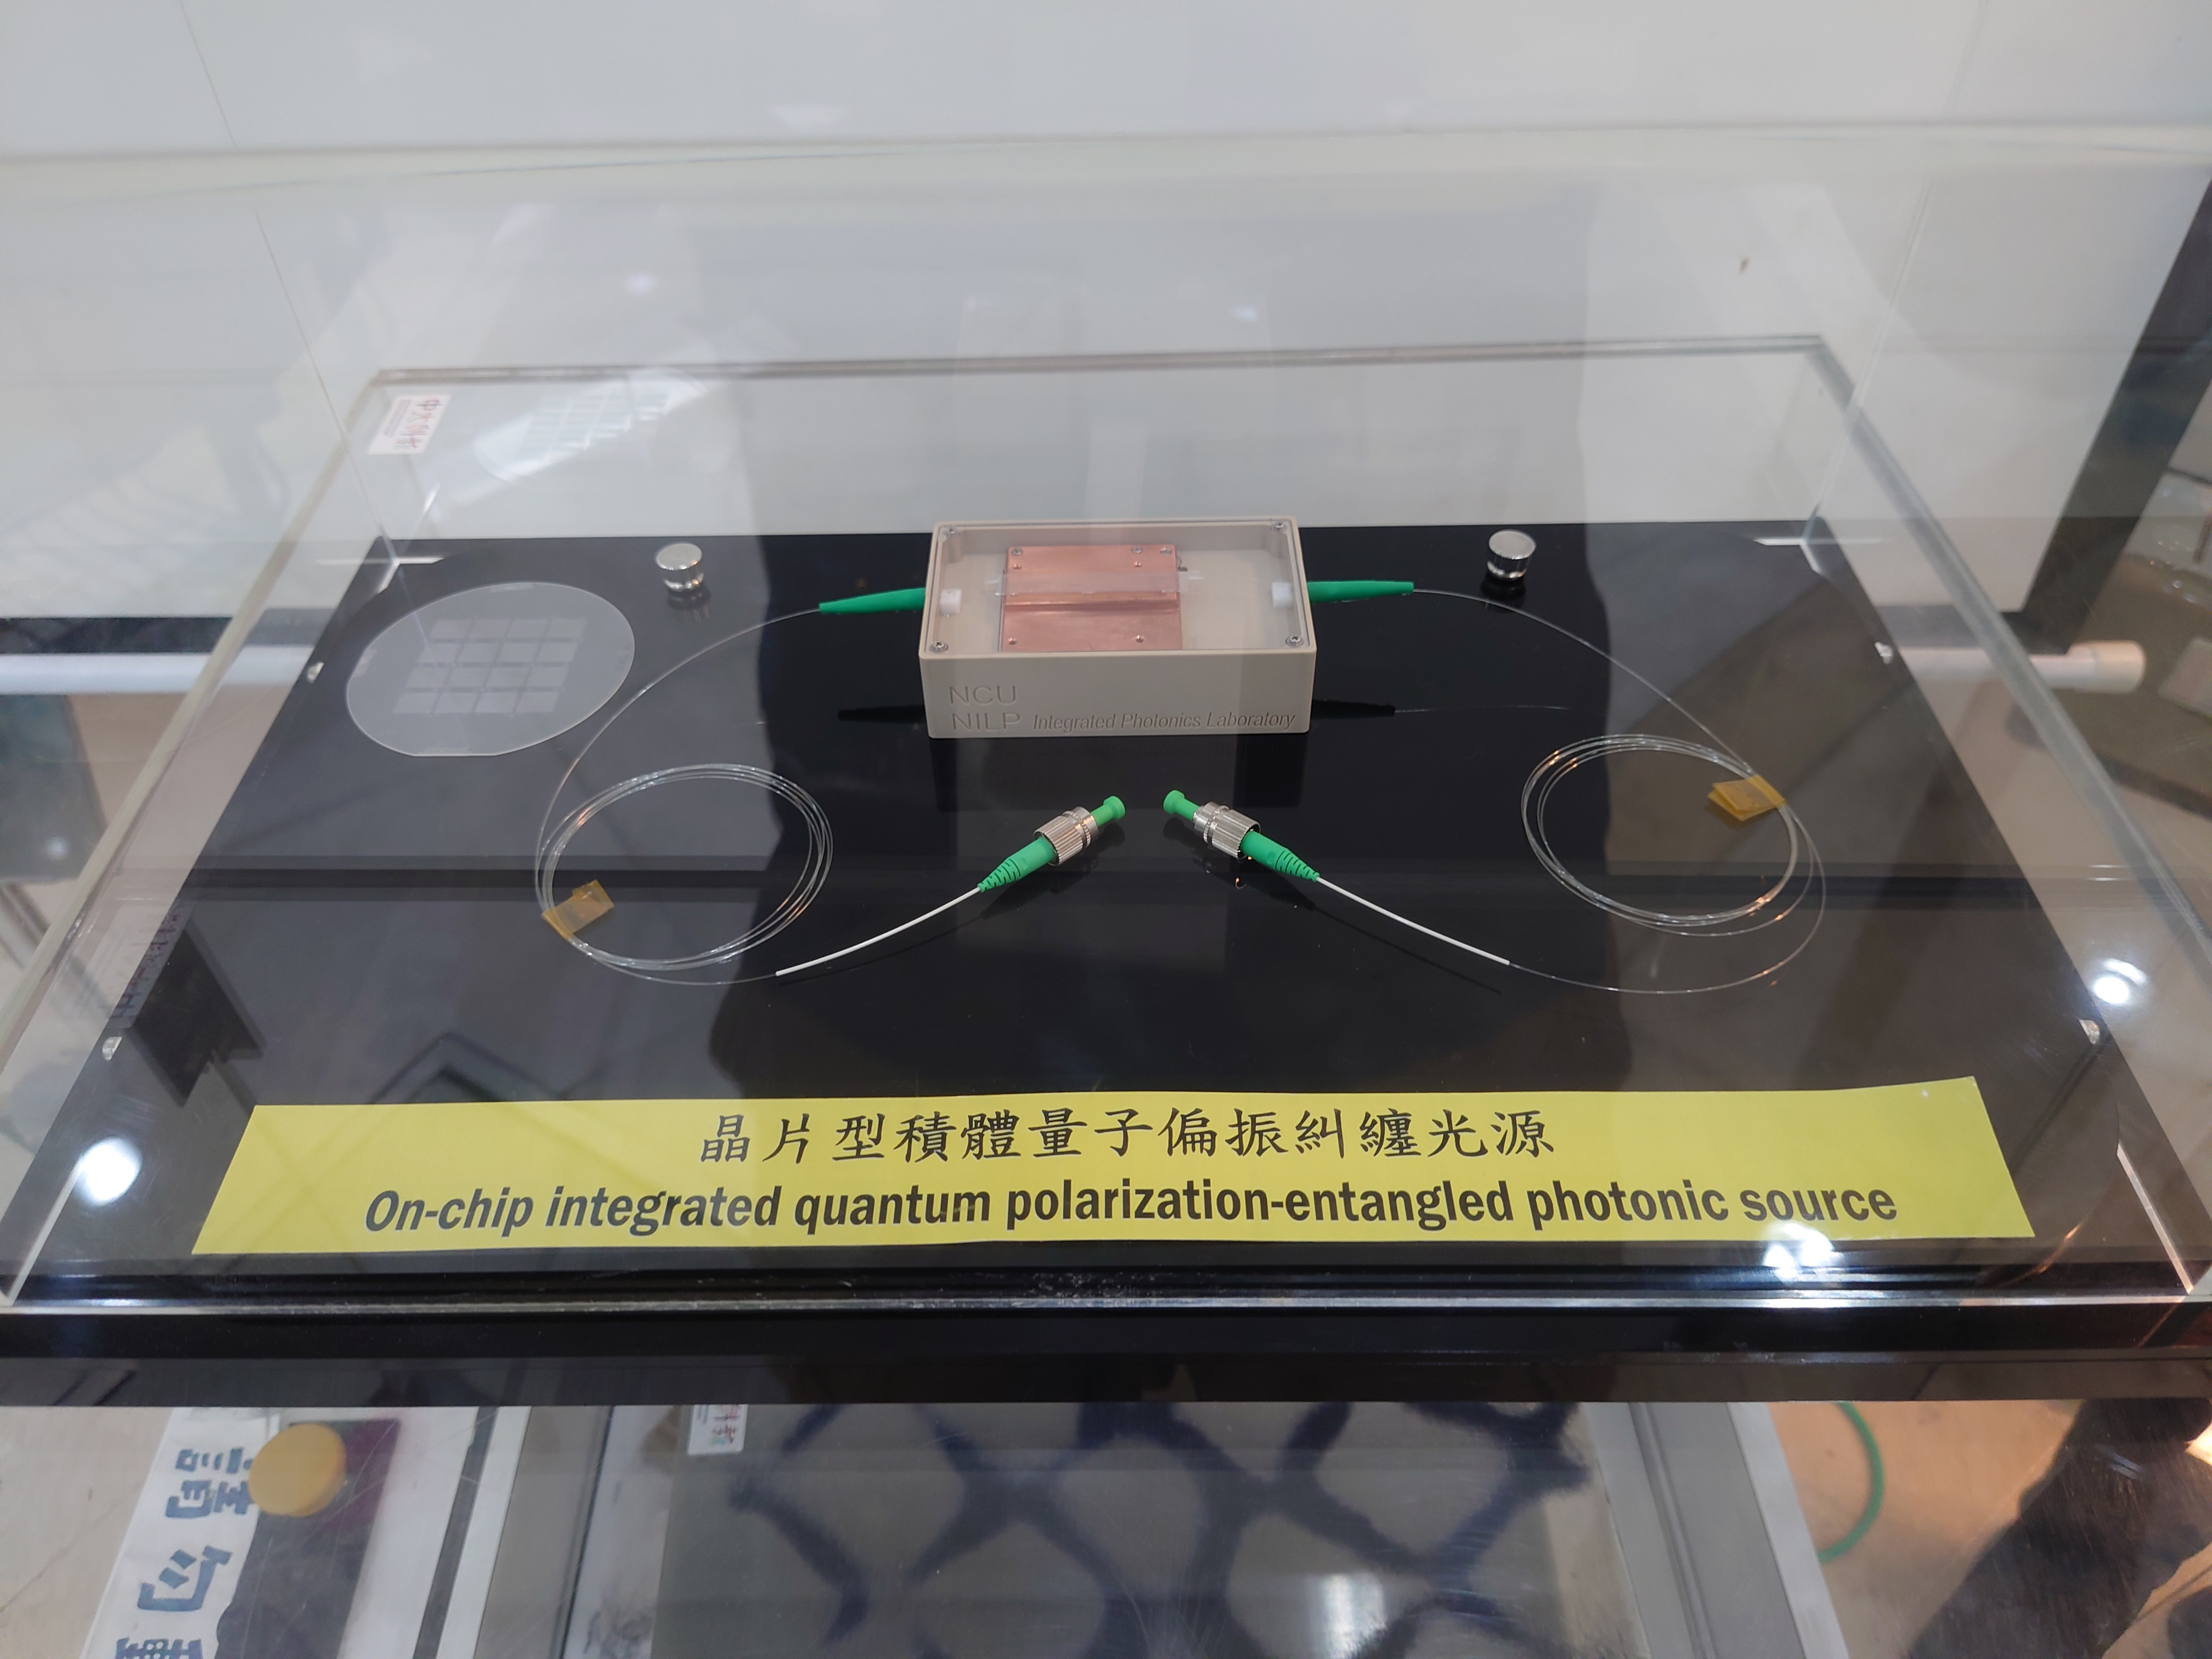 現場展示晶片型積體量子偏振糾纏光源樣品。照片科教中心提供。